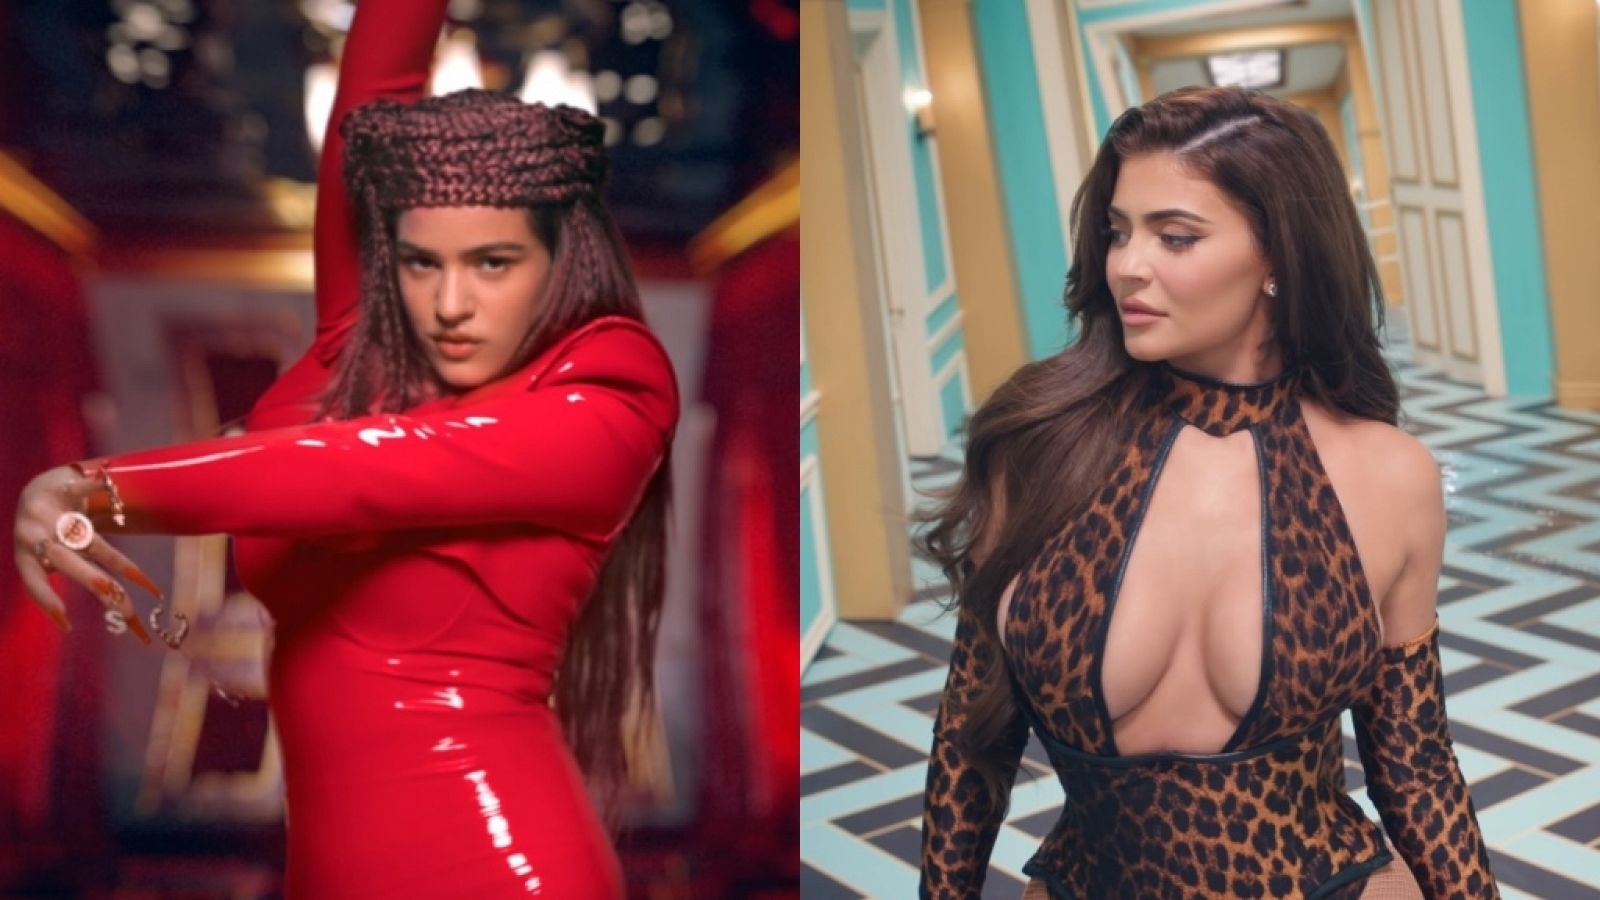  Roslaía y Kylie Jenner: protagonistas de "WAP", el nuevo videoclip de Cardi B y Megan Thee Stallion